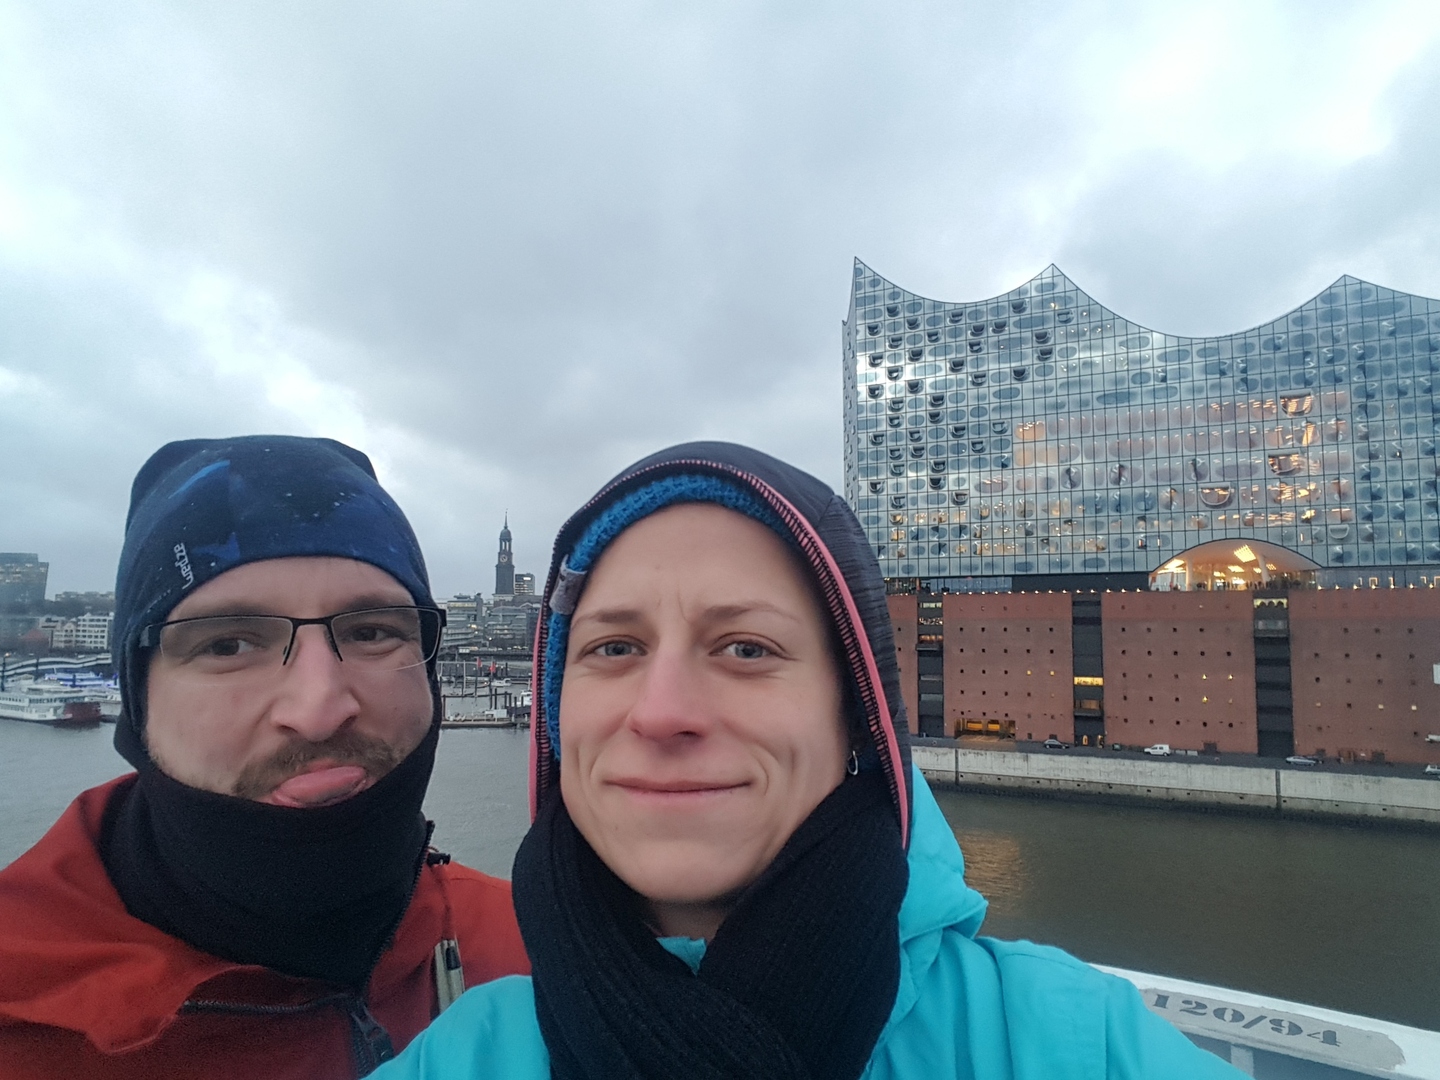 Leaving Hamburg on January 11th, 2019